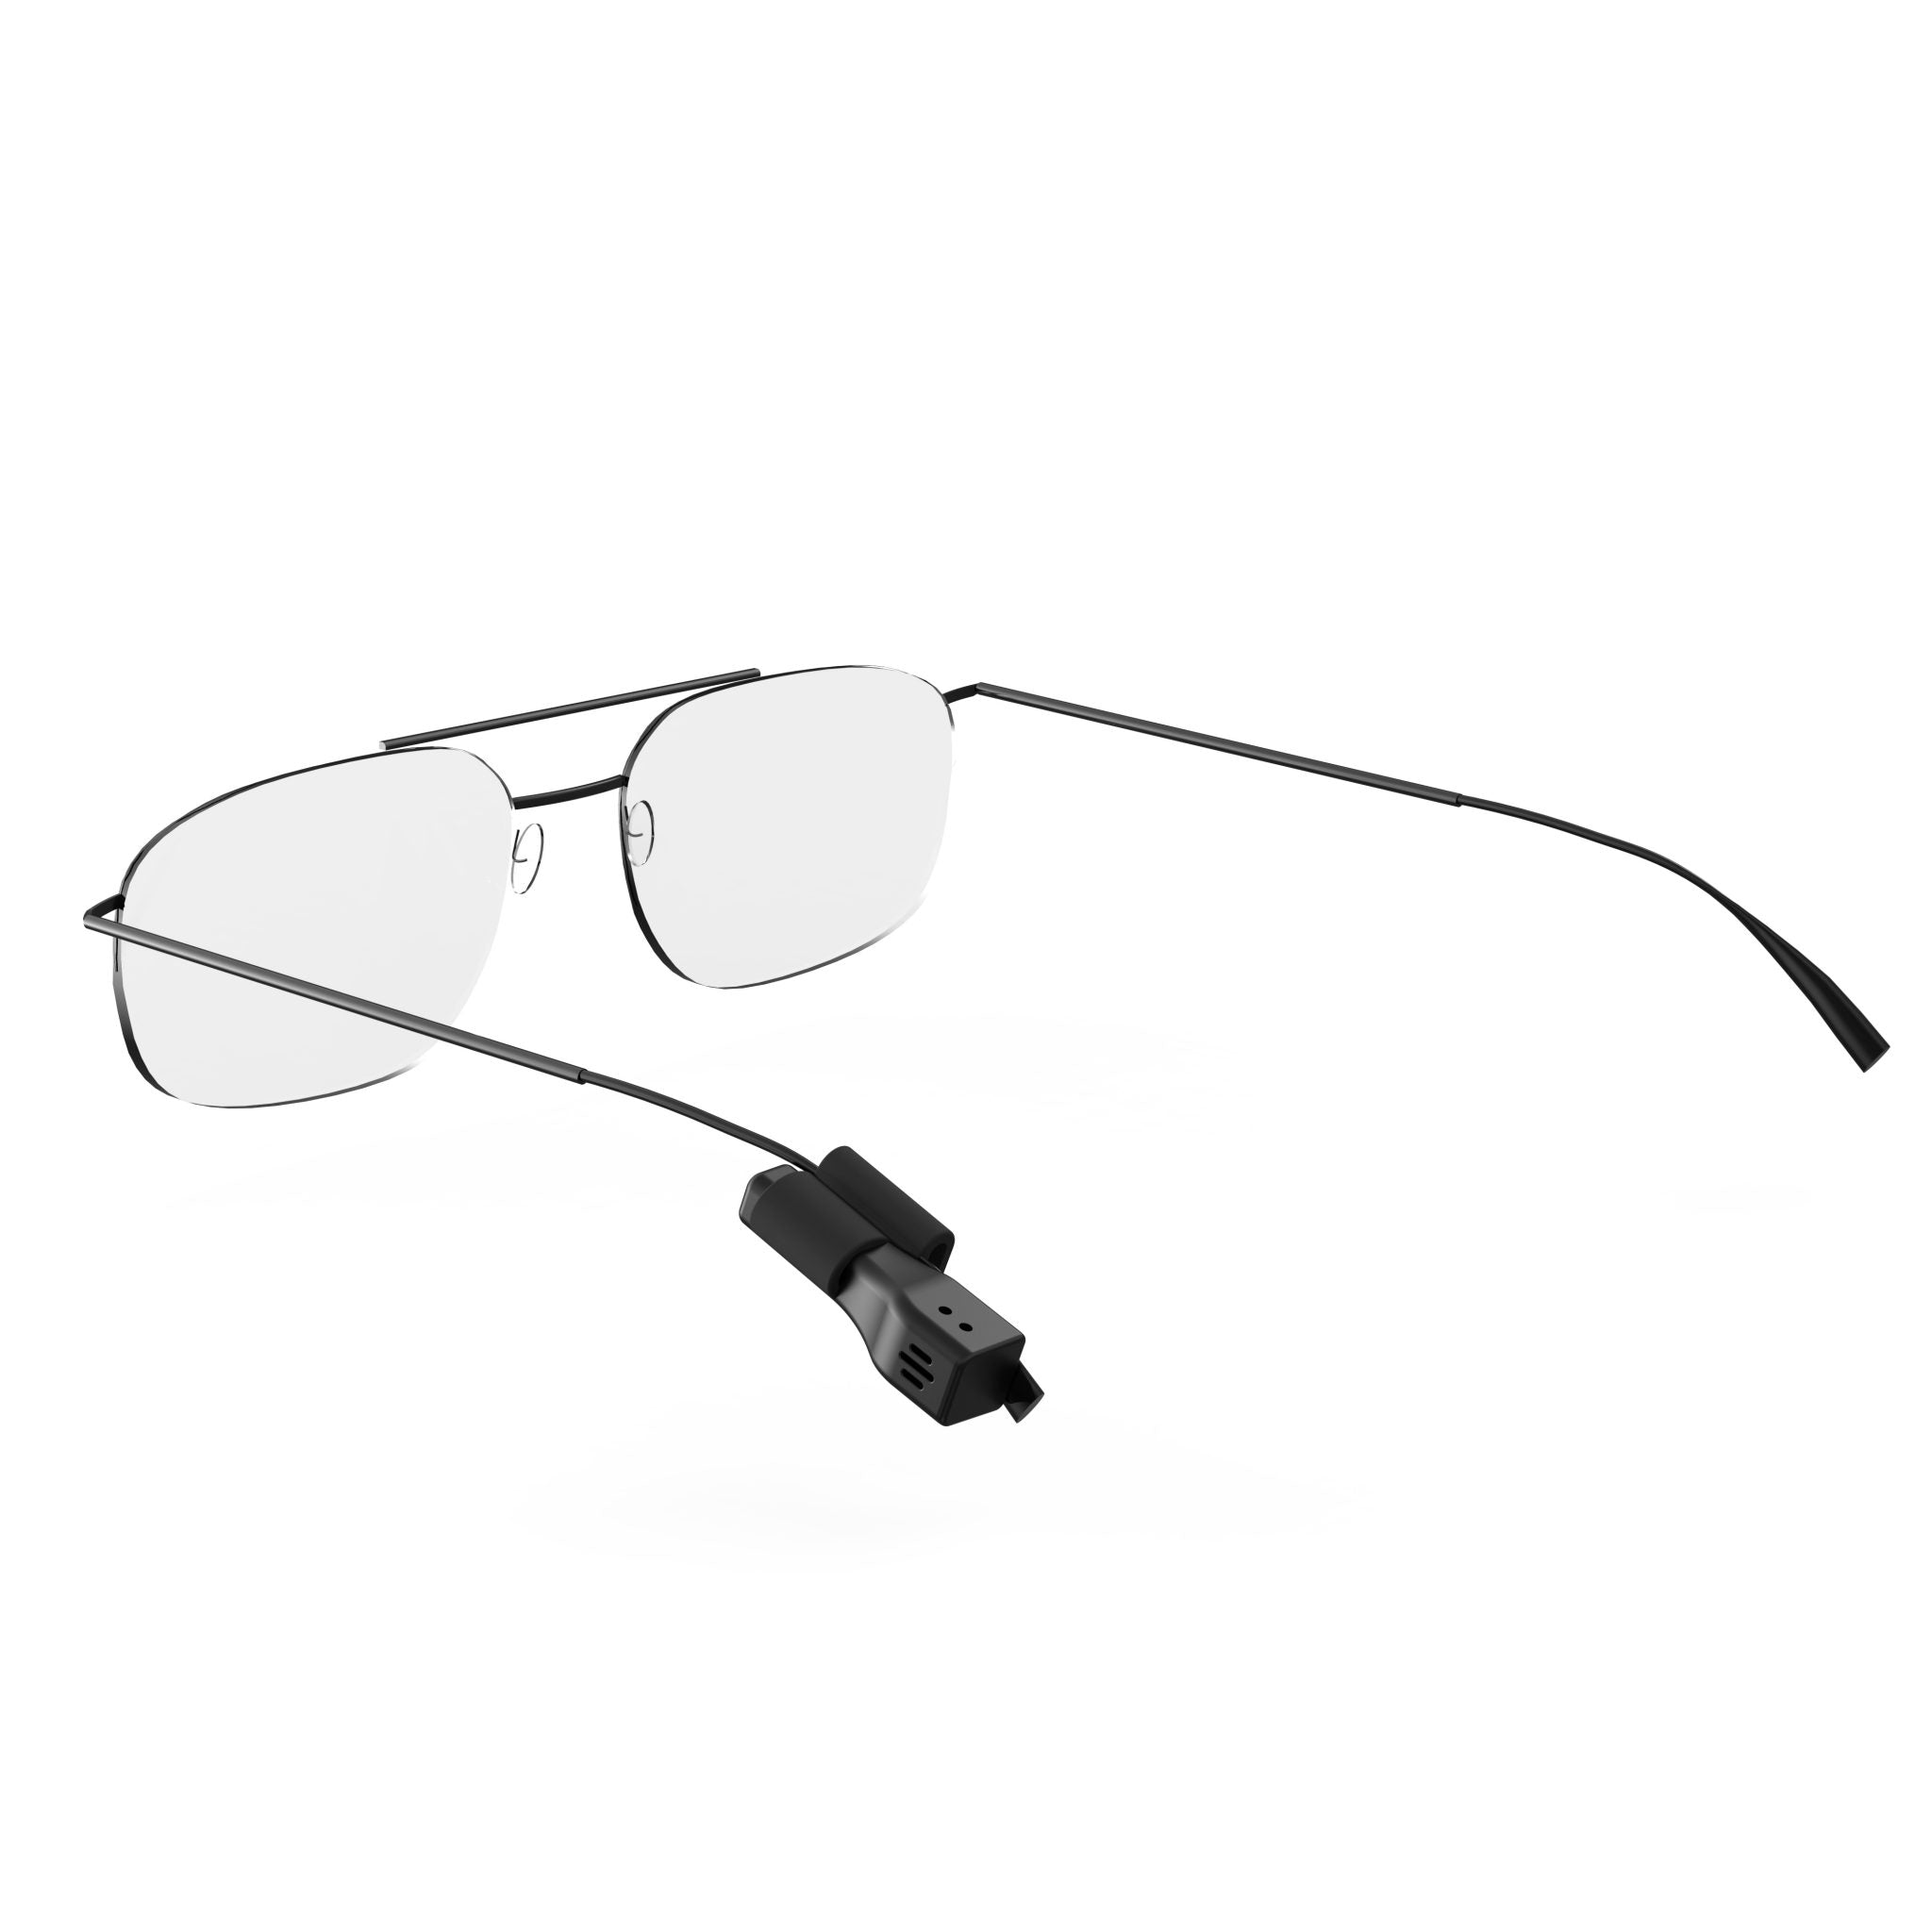 Schlüsselfinder MUSEGEAR Brillenfinder Bluetooth